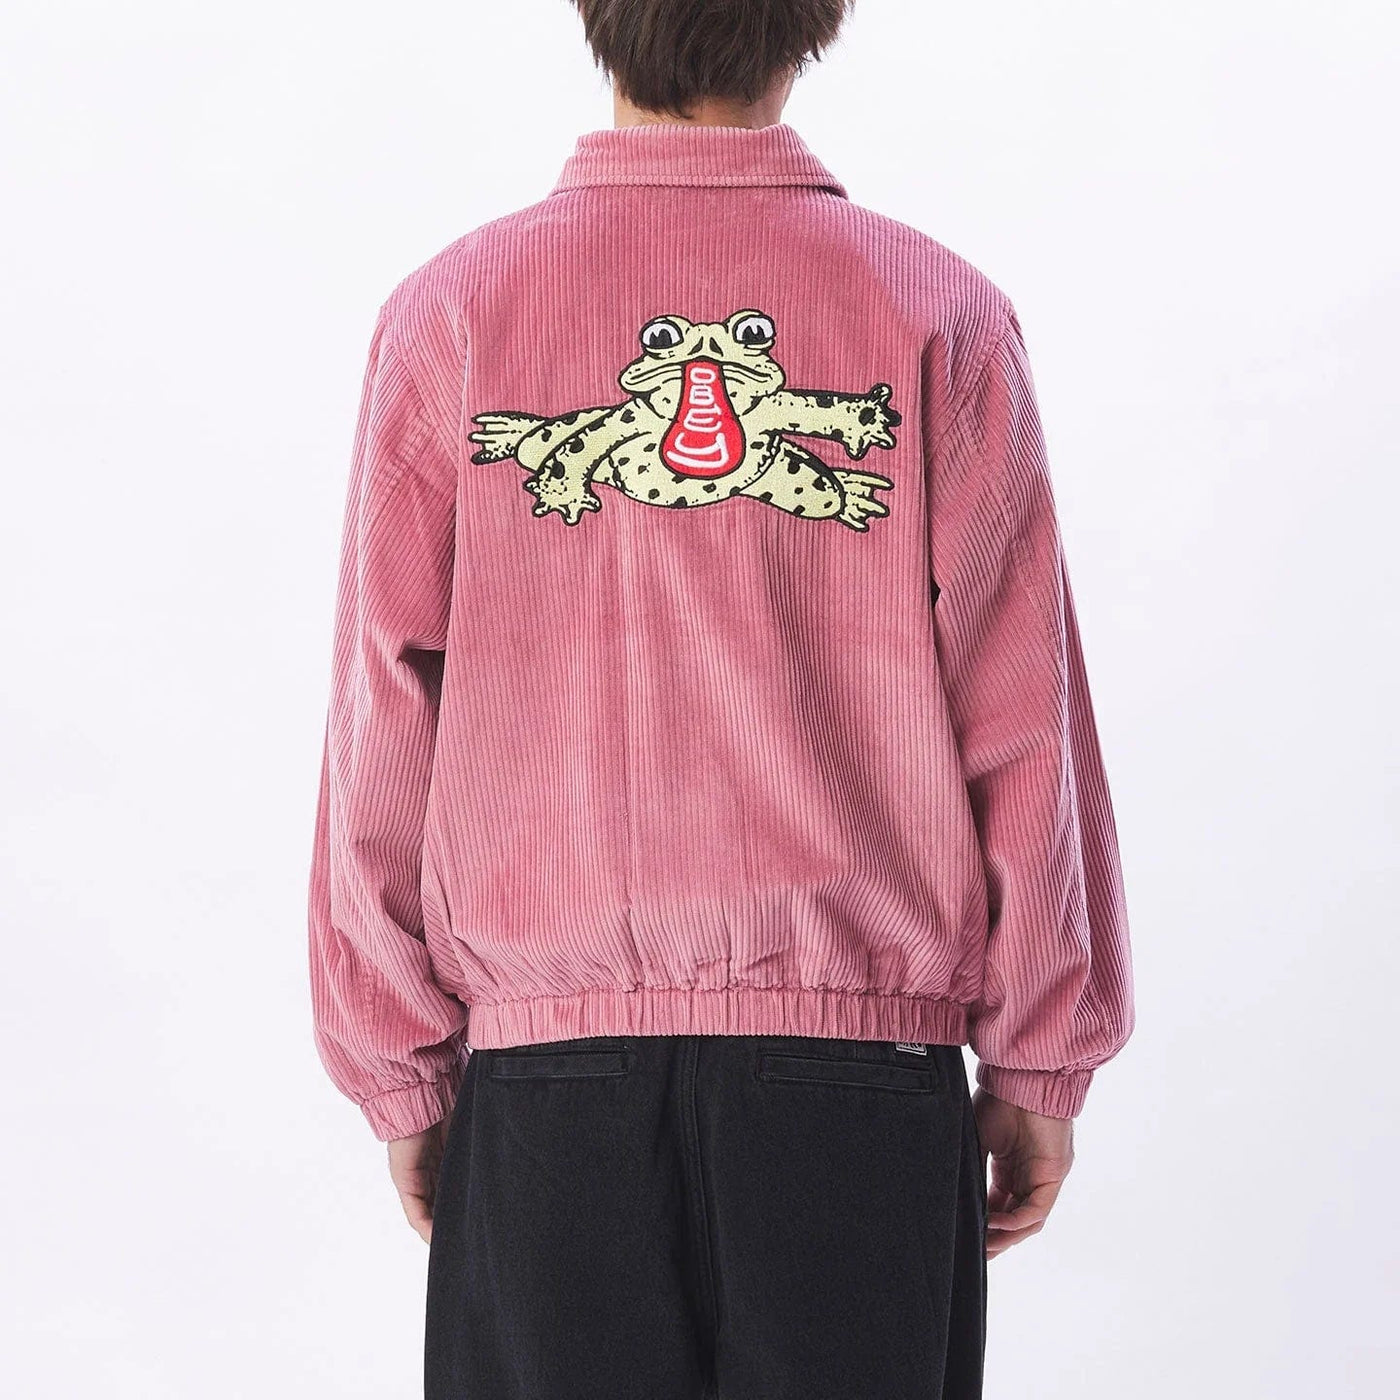 Obey Manteaux et vestes Romes Cord Jacket Vintage Pink